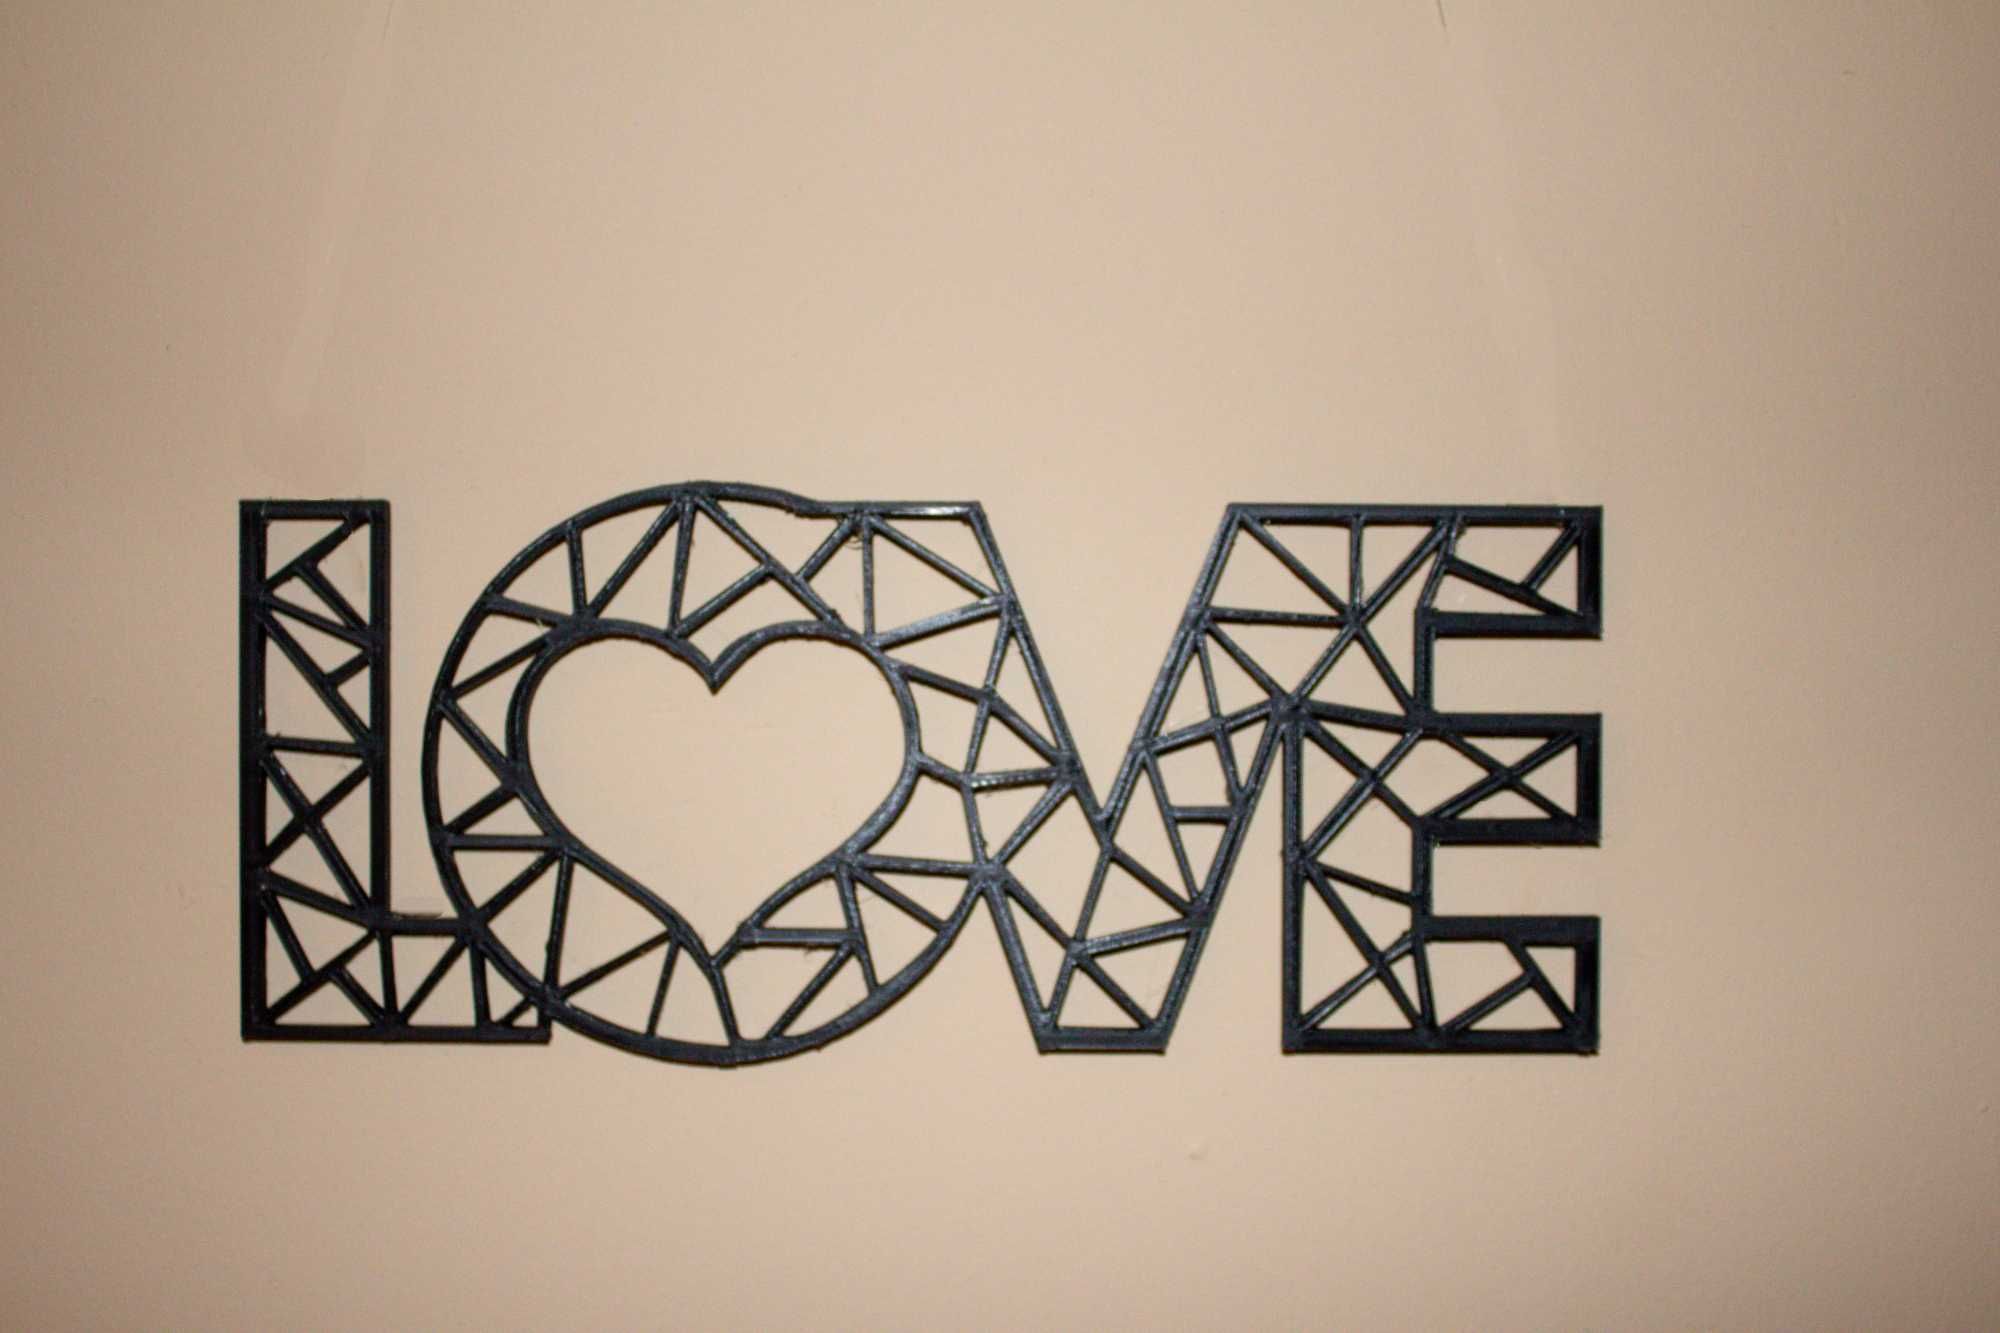 Dekoracyjny napis "LOVE" do powieszenia na ścianie